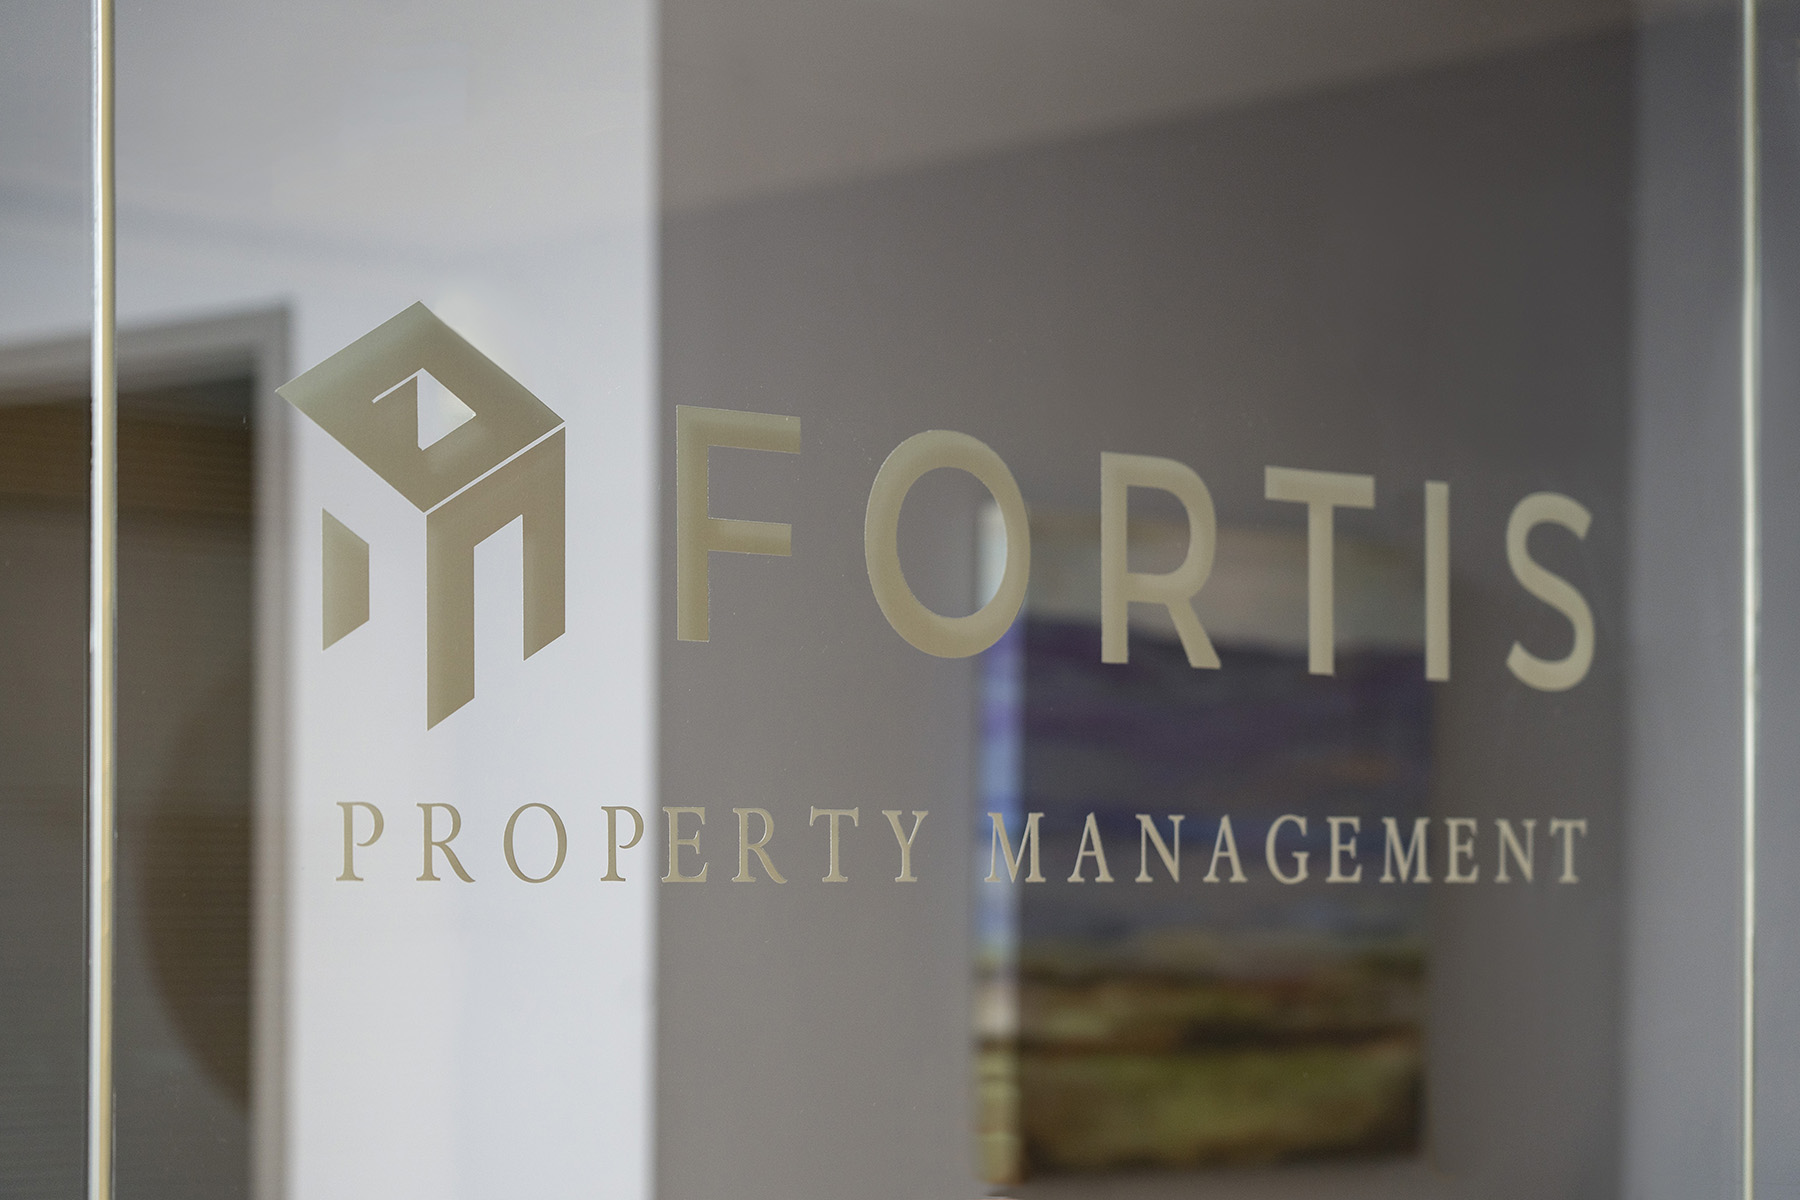 Fortis property management
office entrance